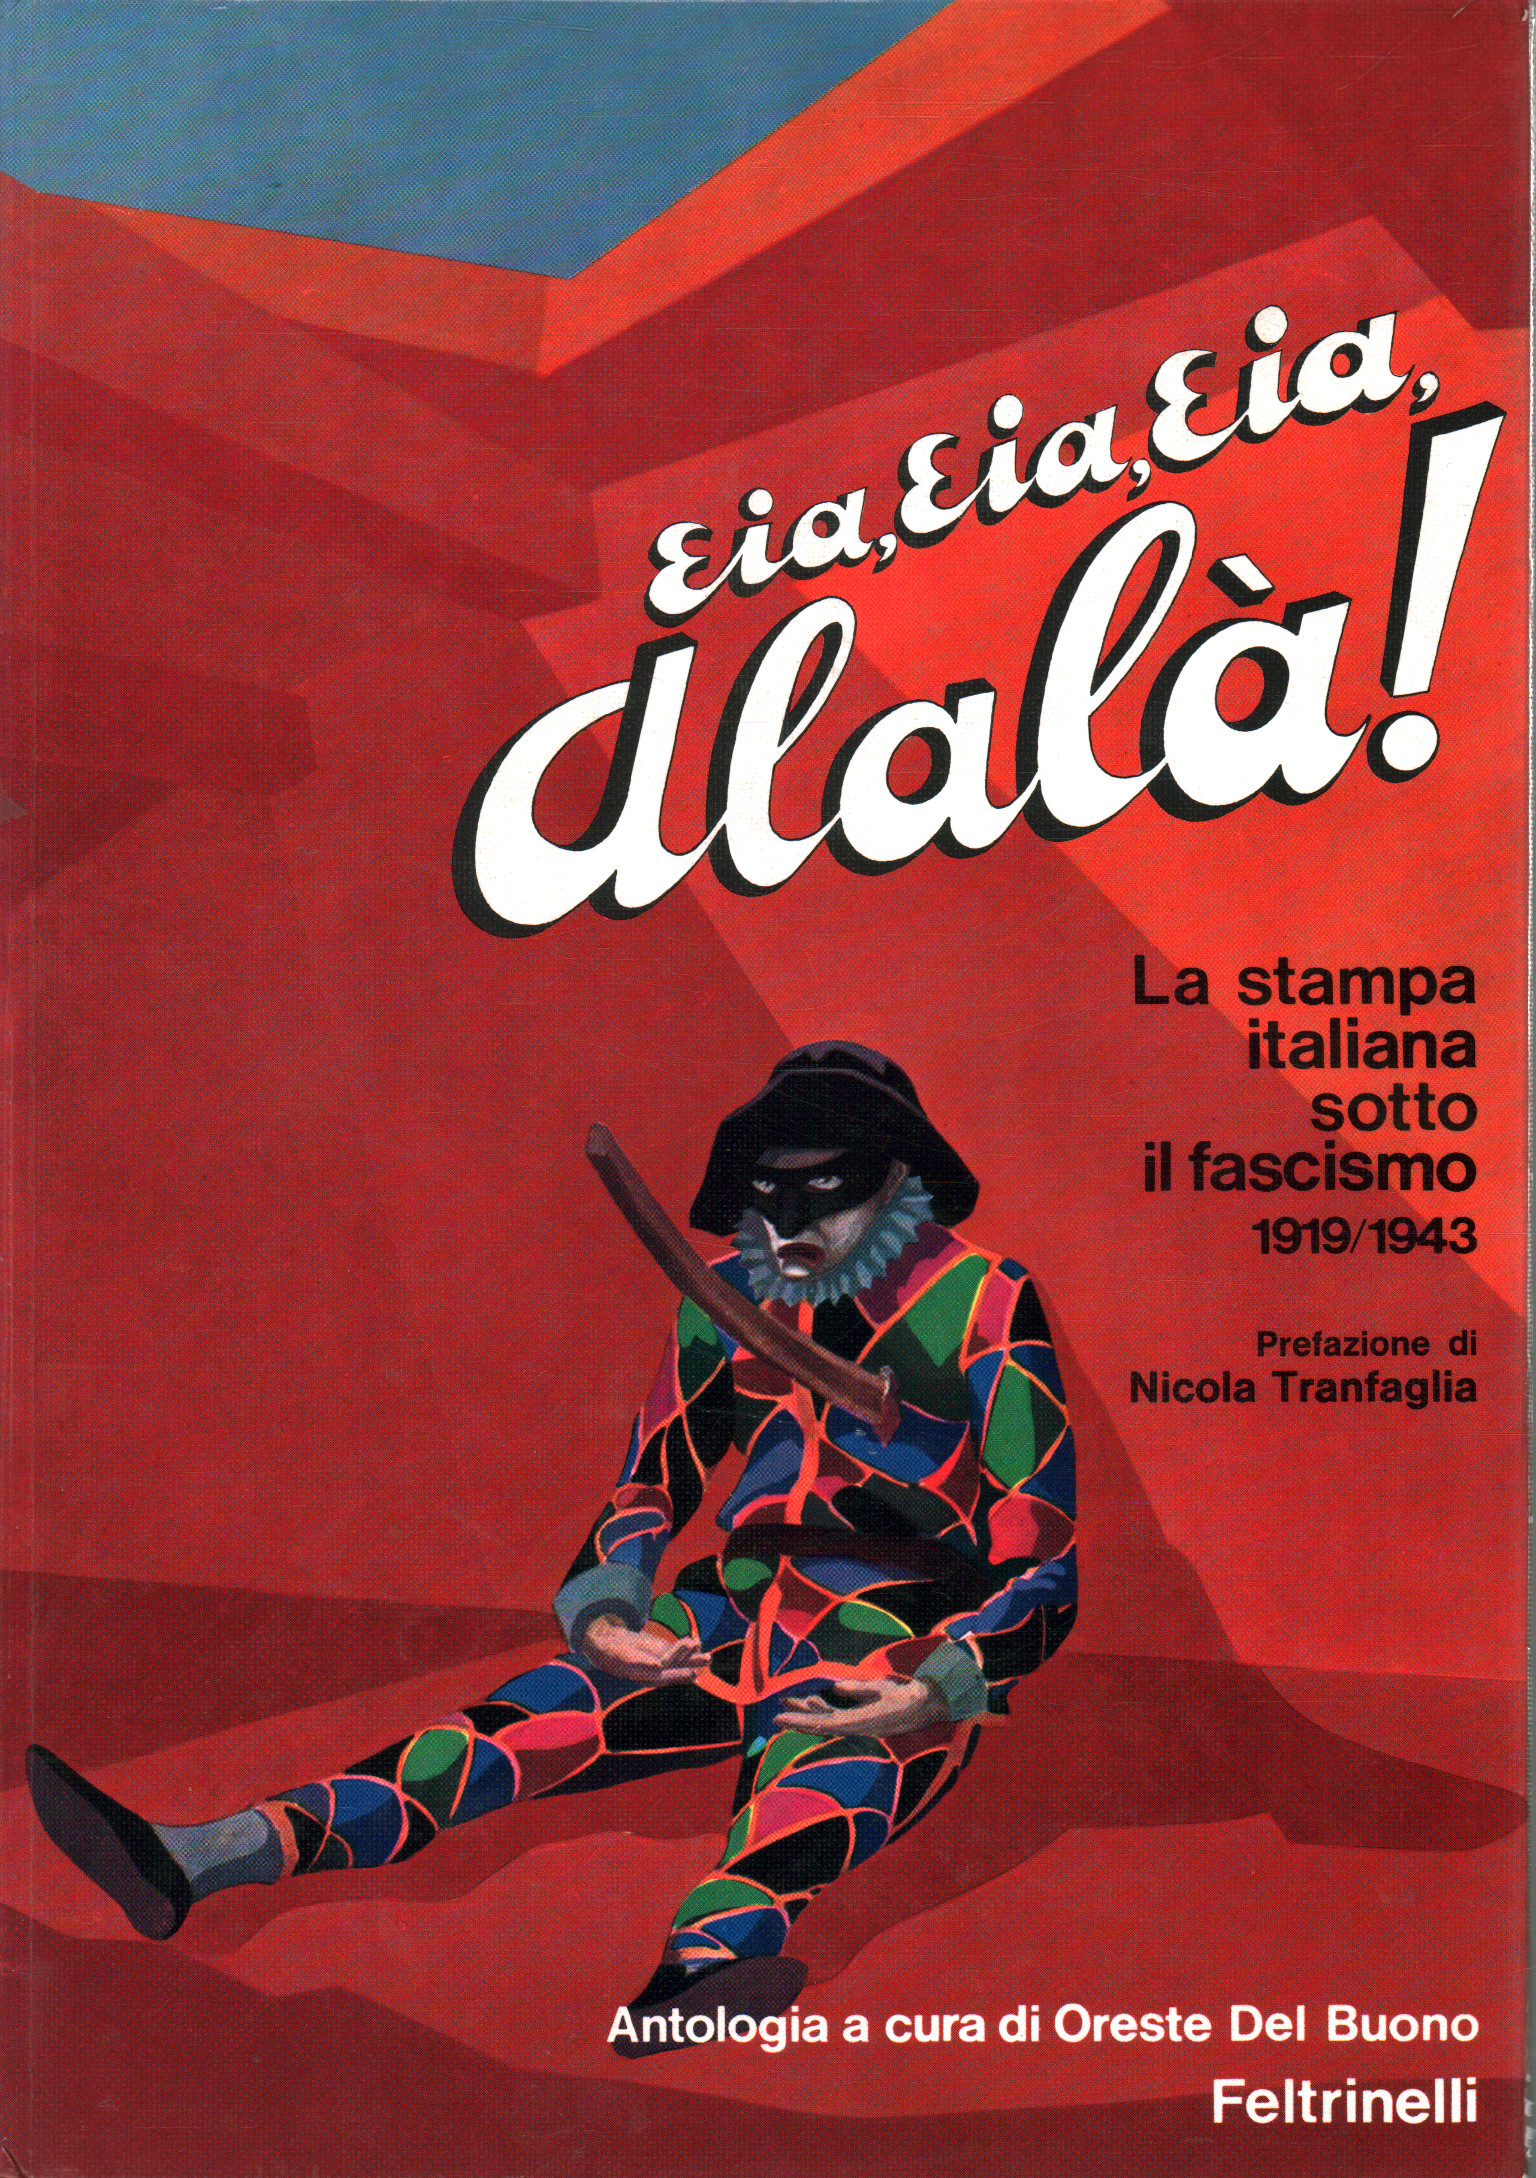 Eia Eia Eia Alalà! The Italian press under the fas, Oreste Del Buono